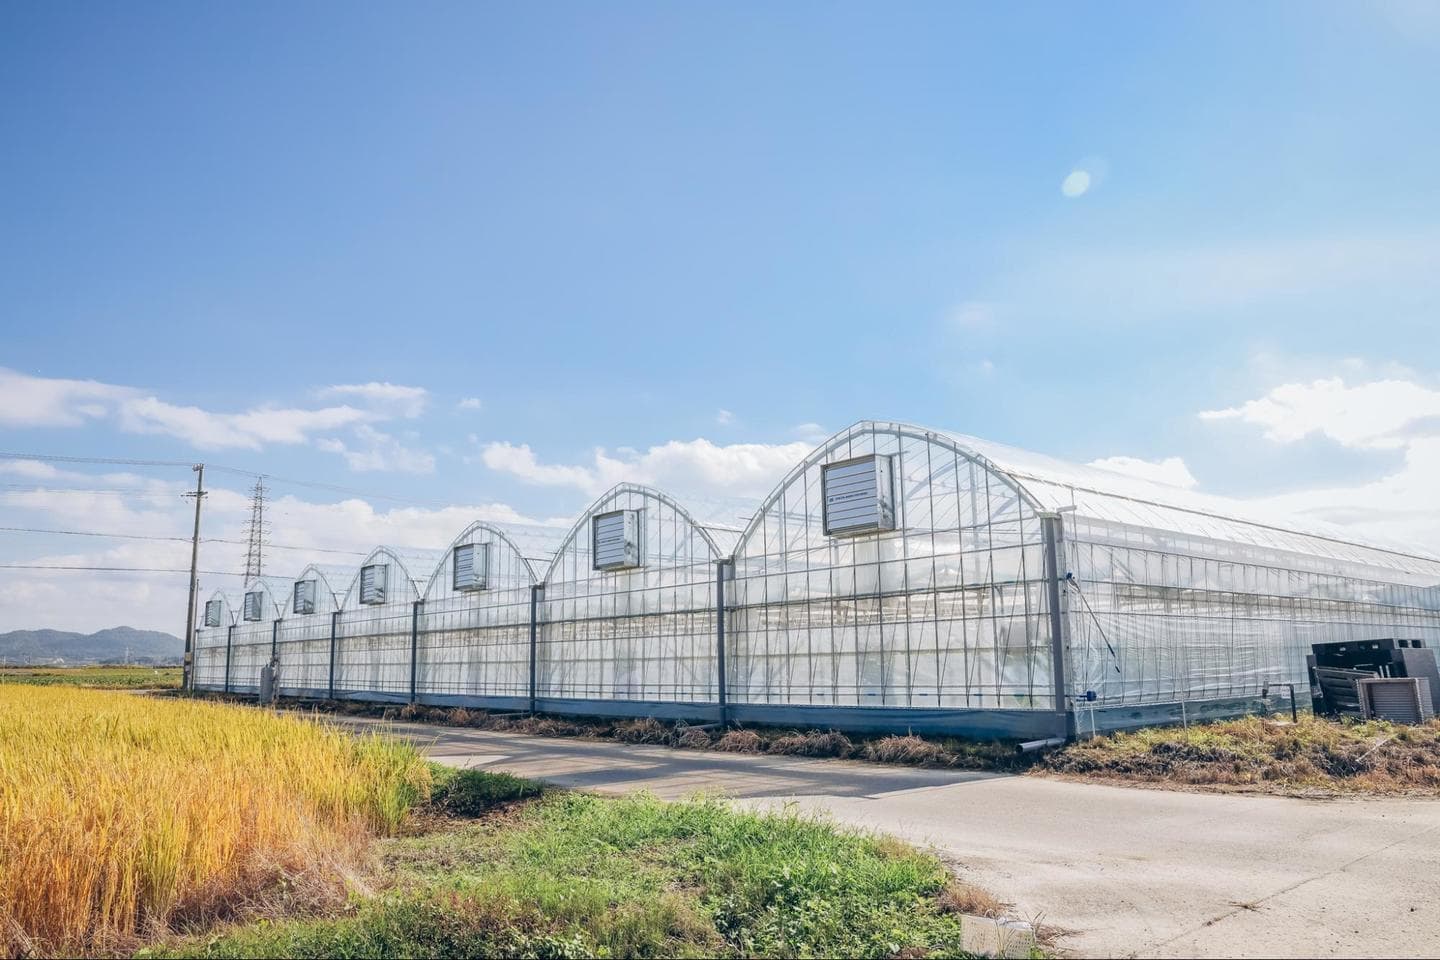 ７つのハウスが並ぶ。島・しまファームでは茄子のハウス栽培が多くを占めているが、夏の間は露地栽培も行っている。